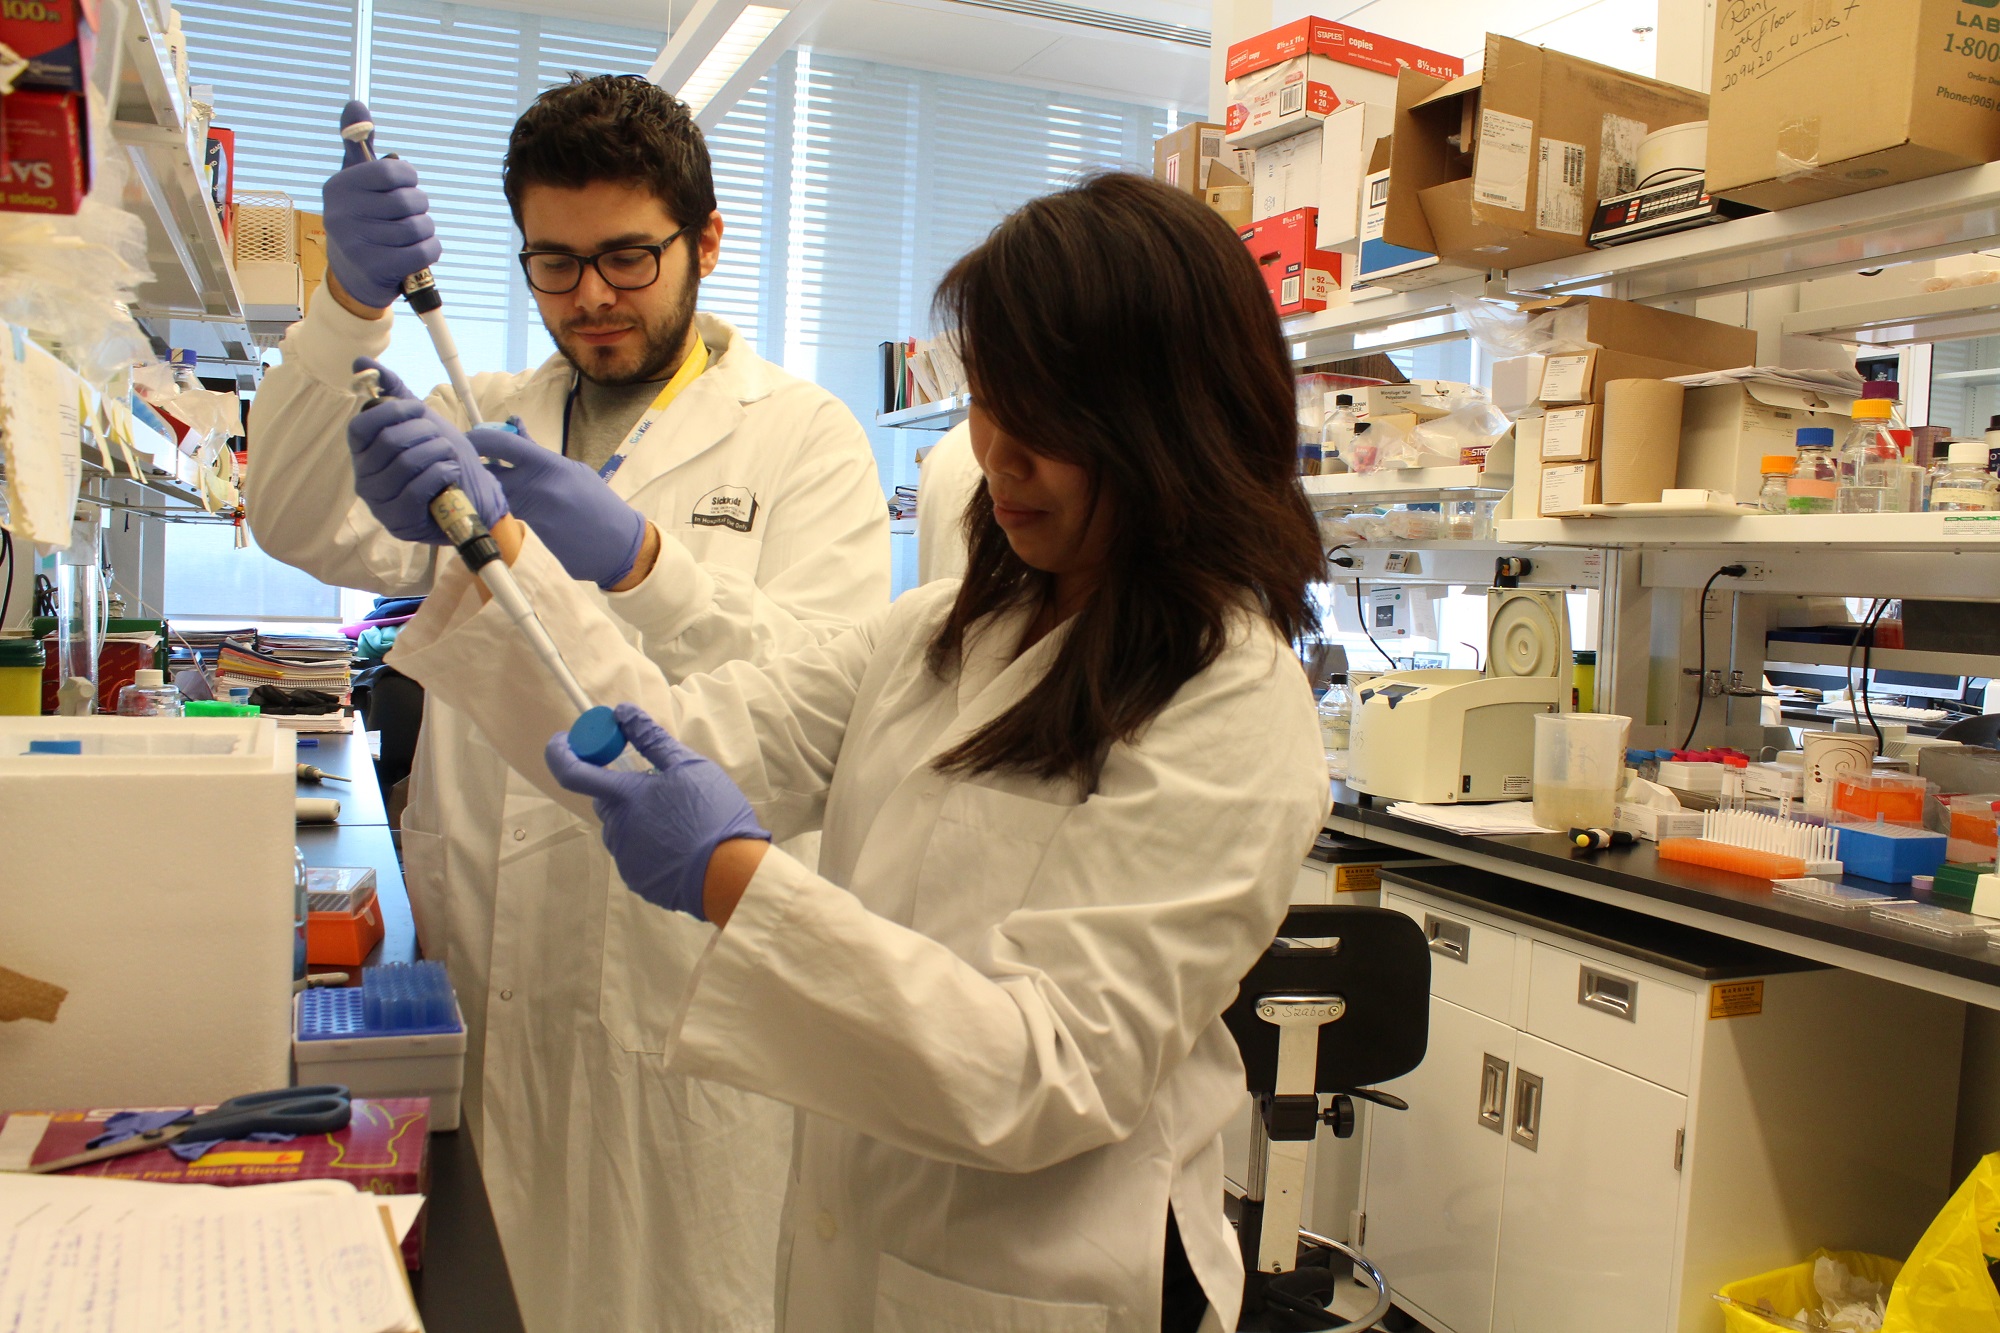 Un chercheur masculin et féminin dans un laboratoire de recherche utilisant de grandes pipettes pour transférer des liquides dans des récipients bleus ronds.